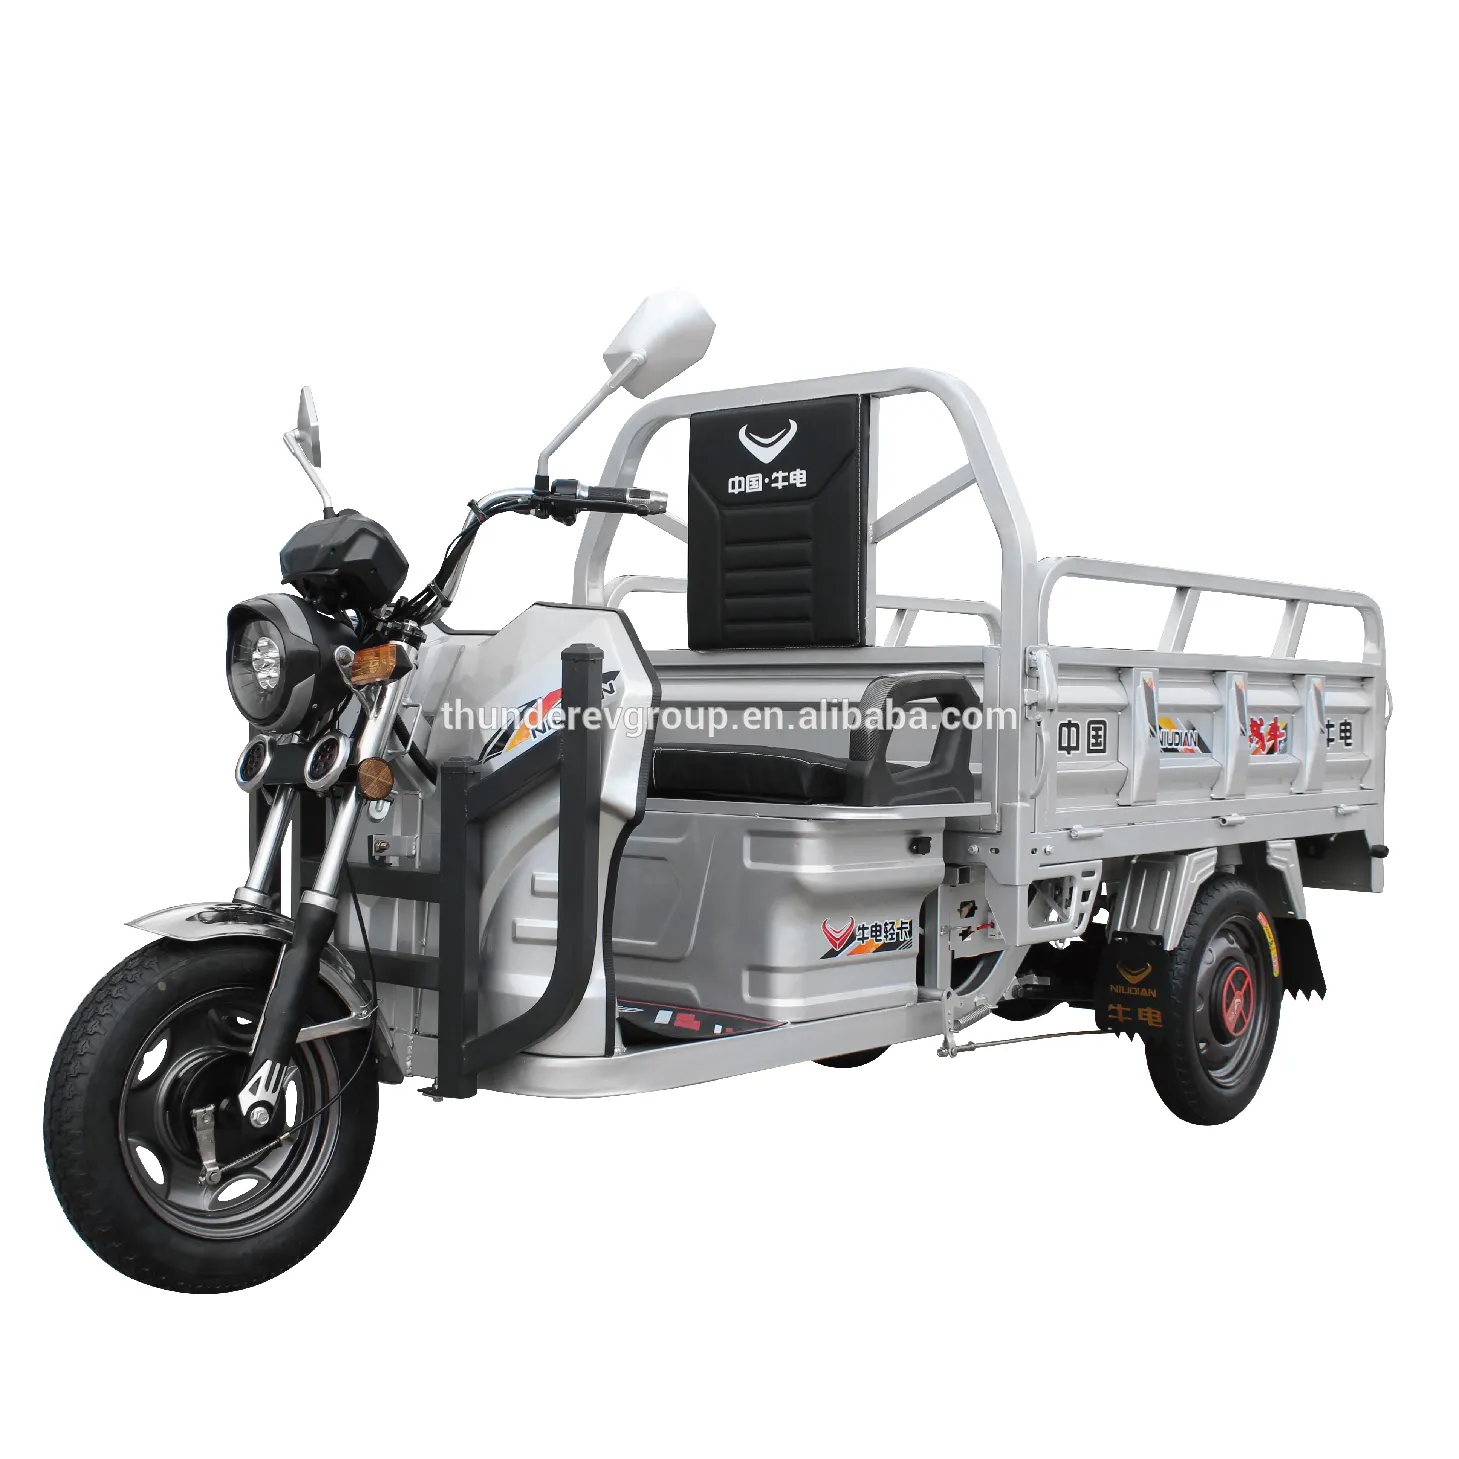 Offre Spéciale chine Tricycle Pour Le fret Moto Cargaison Scooter Essence Trois Roues Pas Cher Prix